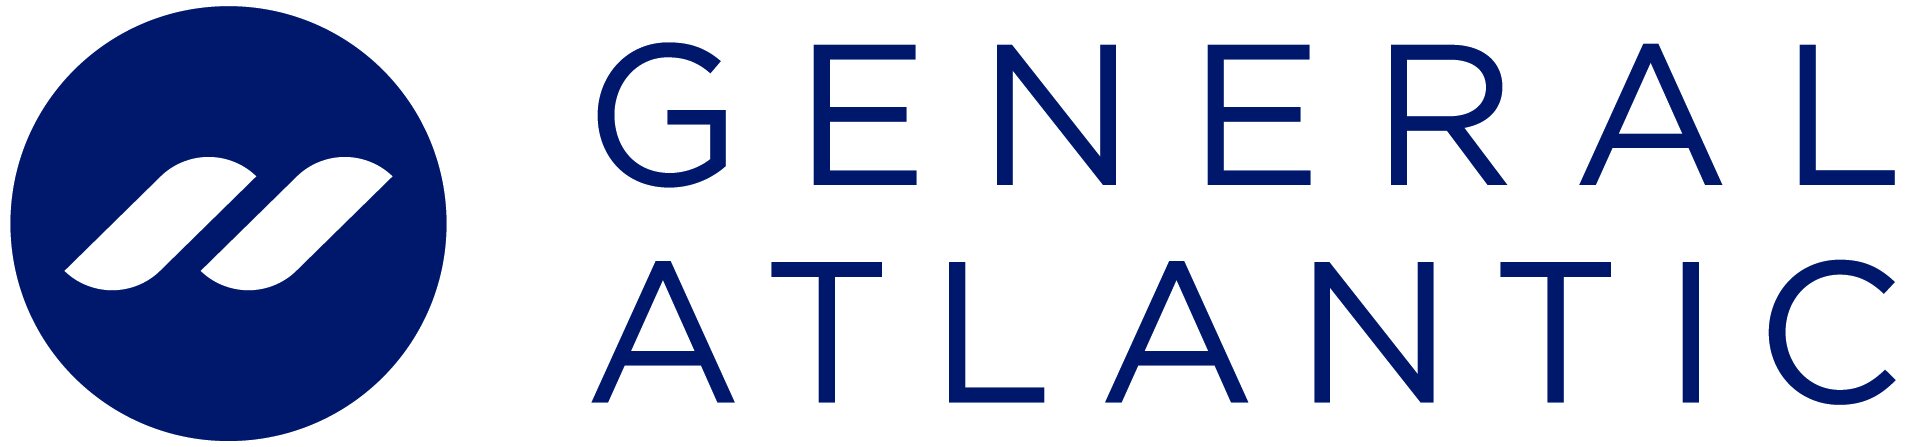 generalatlantic-logo.jpg